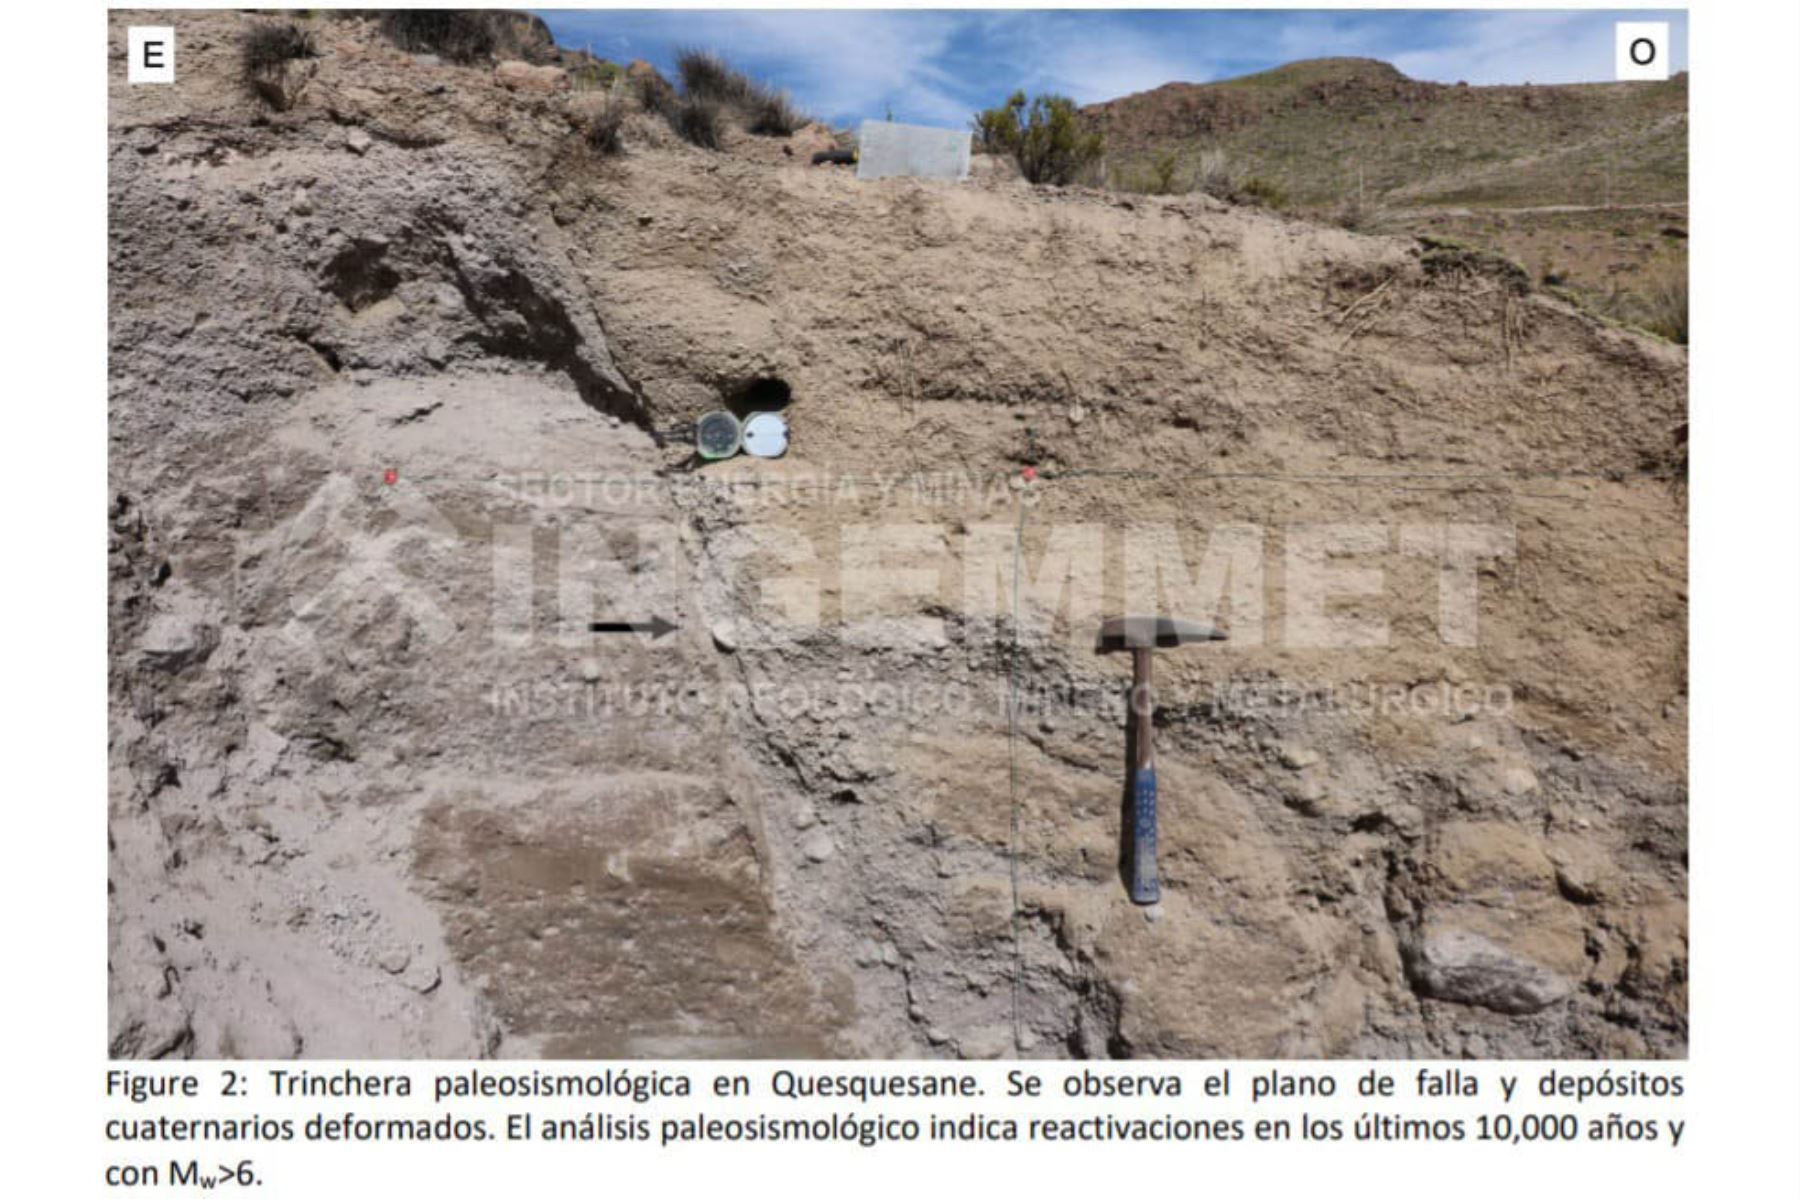 El Ingemmet indicó que los sismos en Tacna están relacionados a la reactivación de la zona de fallas geológicas Putina-Quequesane. Foto: Ingemmet